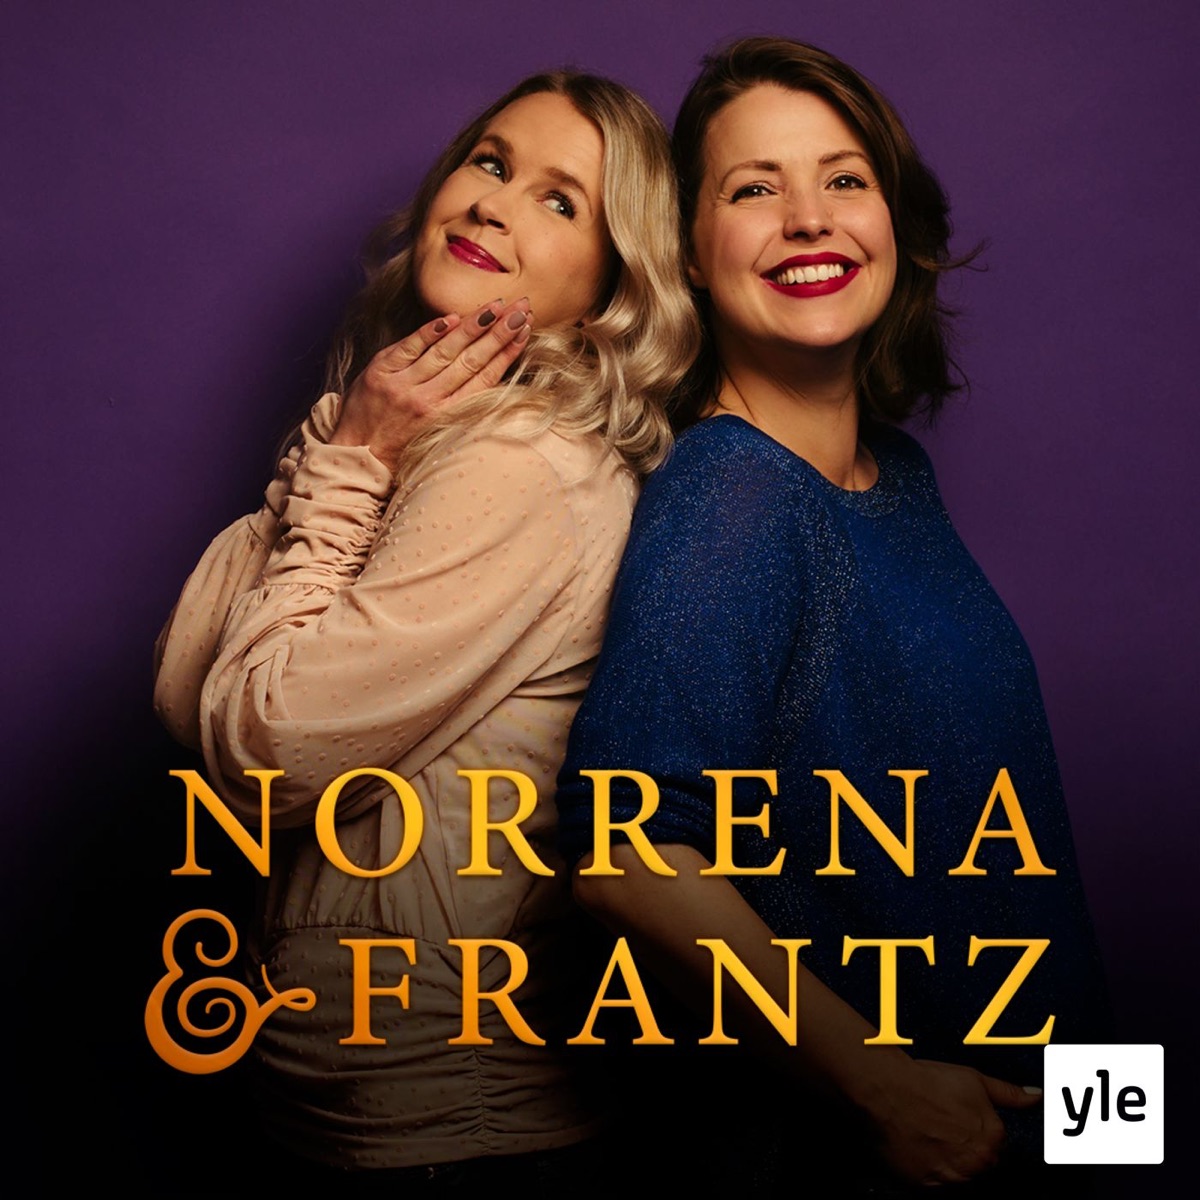 Norrena & Frantz: Dejting i vuxen ålder - härligt eller hemskt?